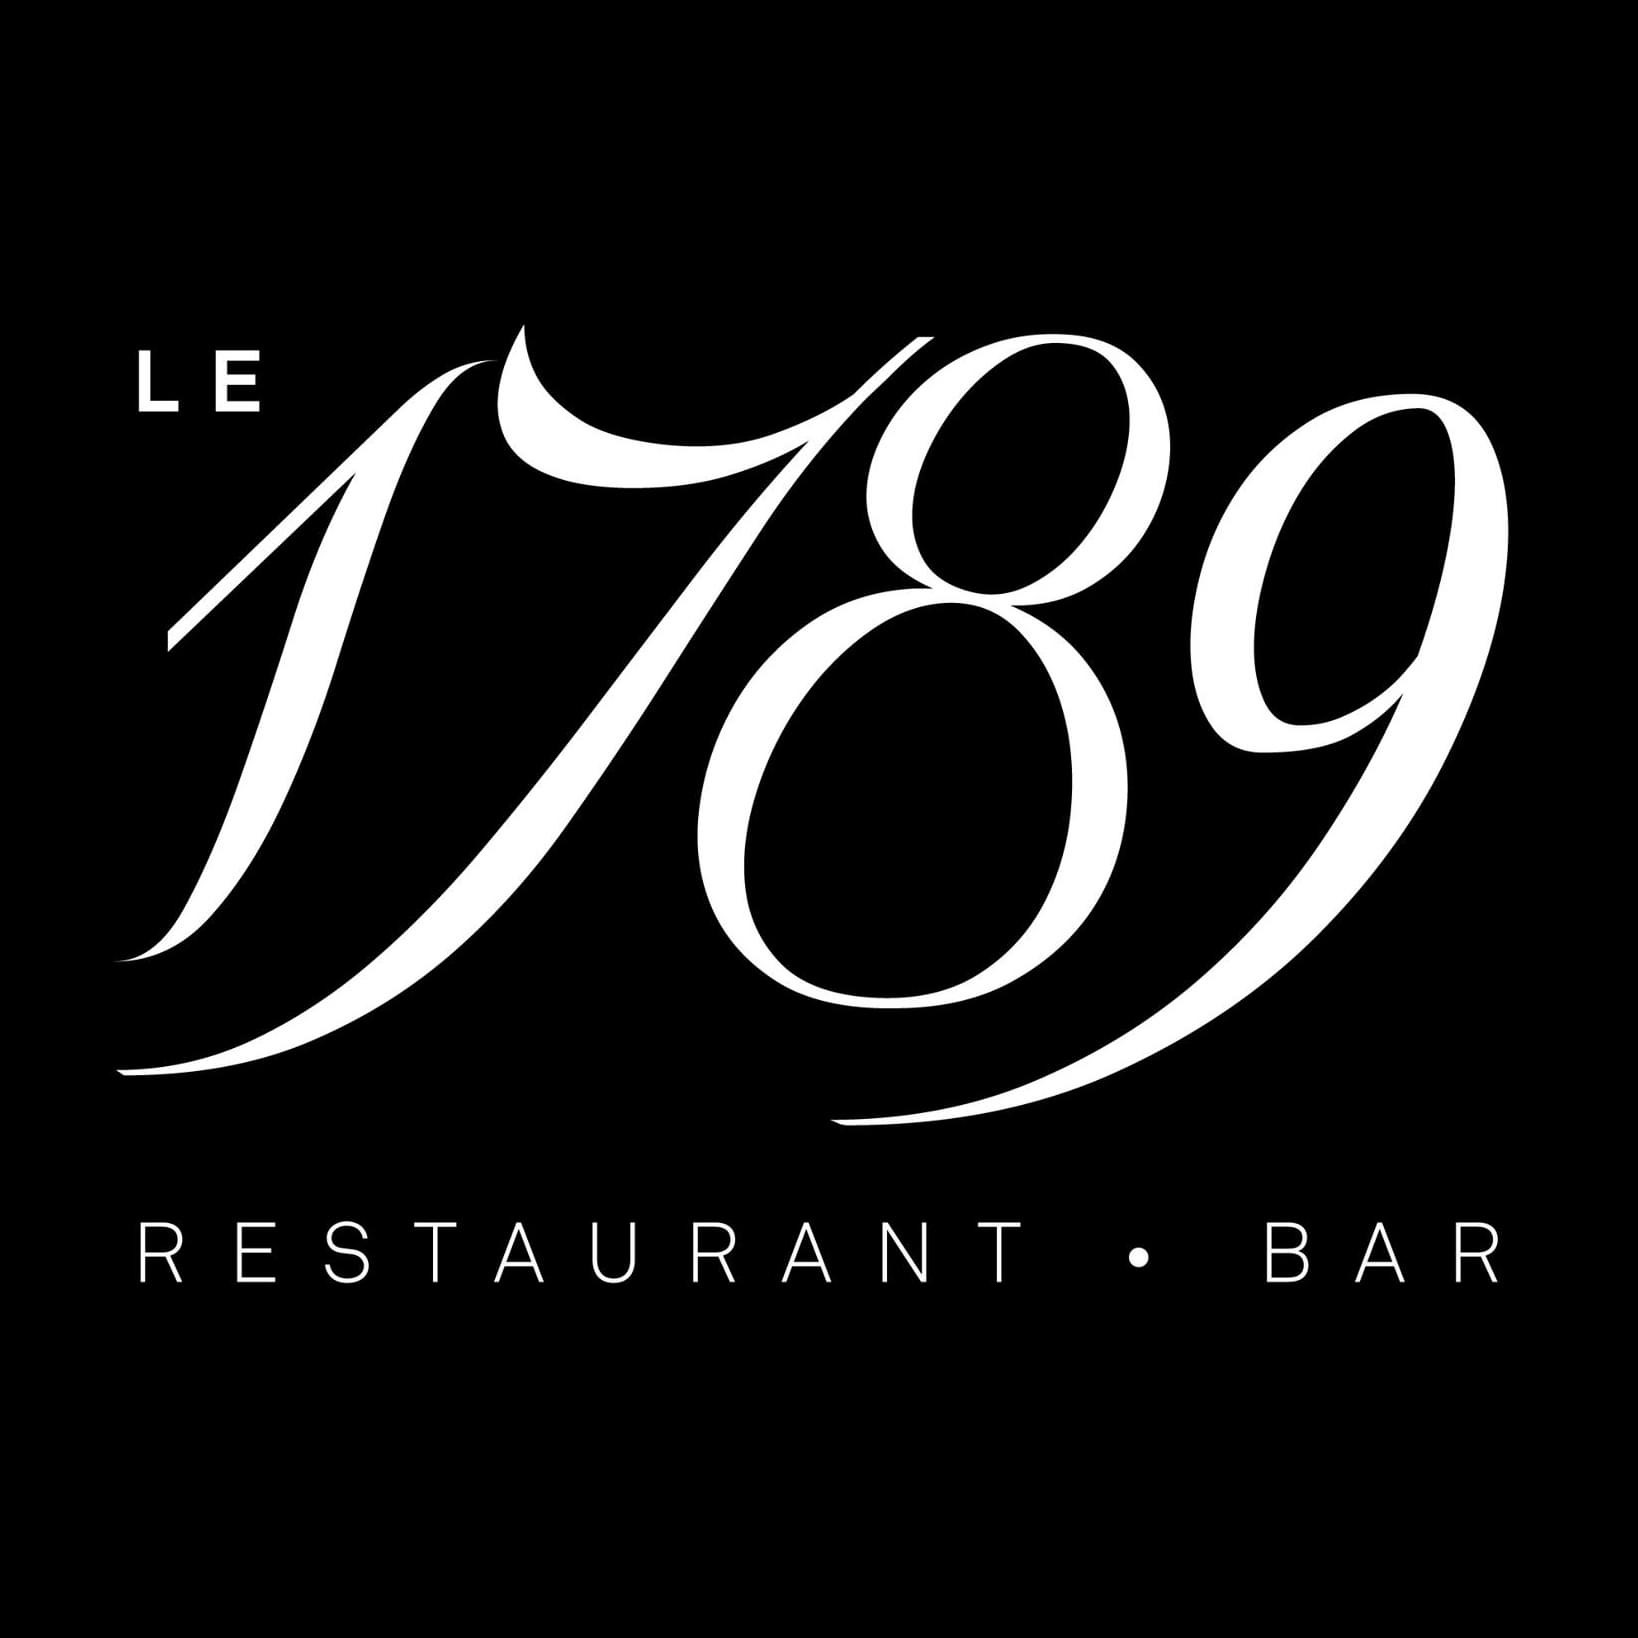 Le 1789 Restaurant - Bar